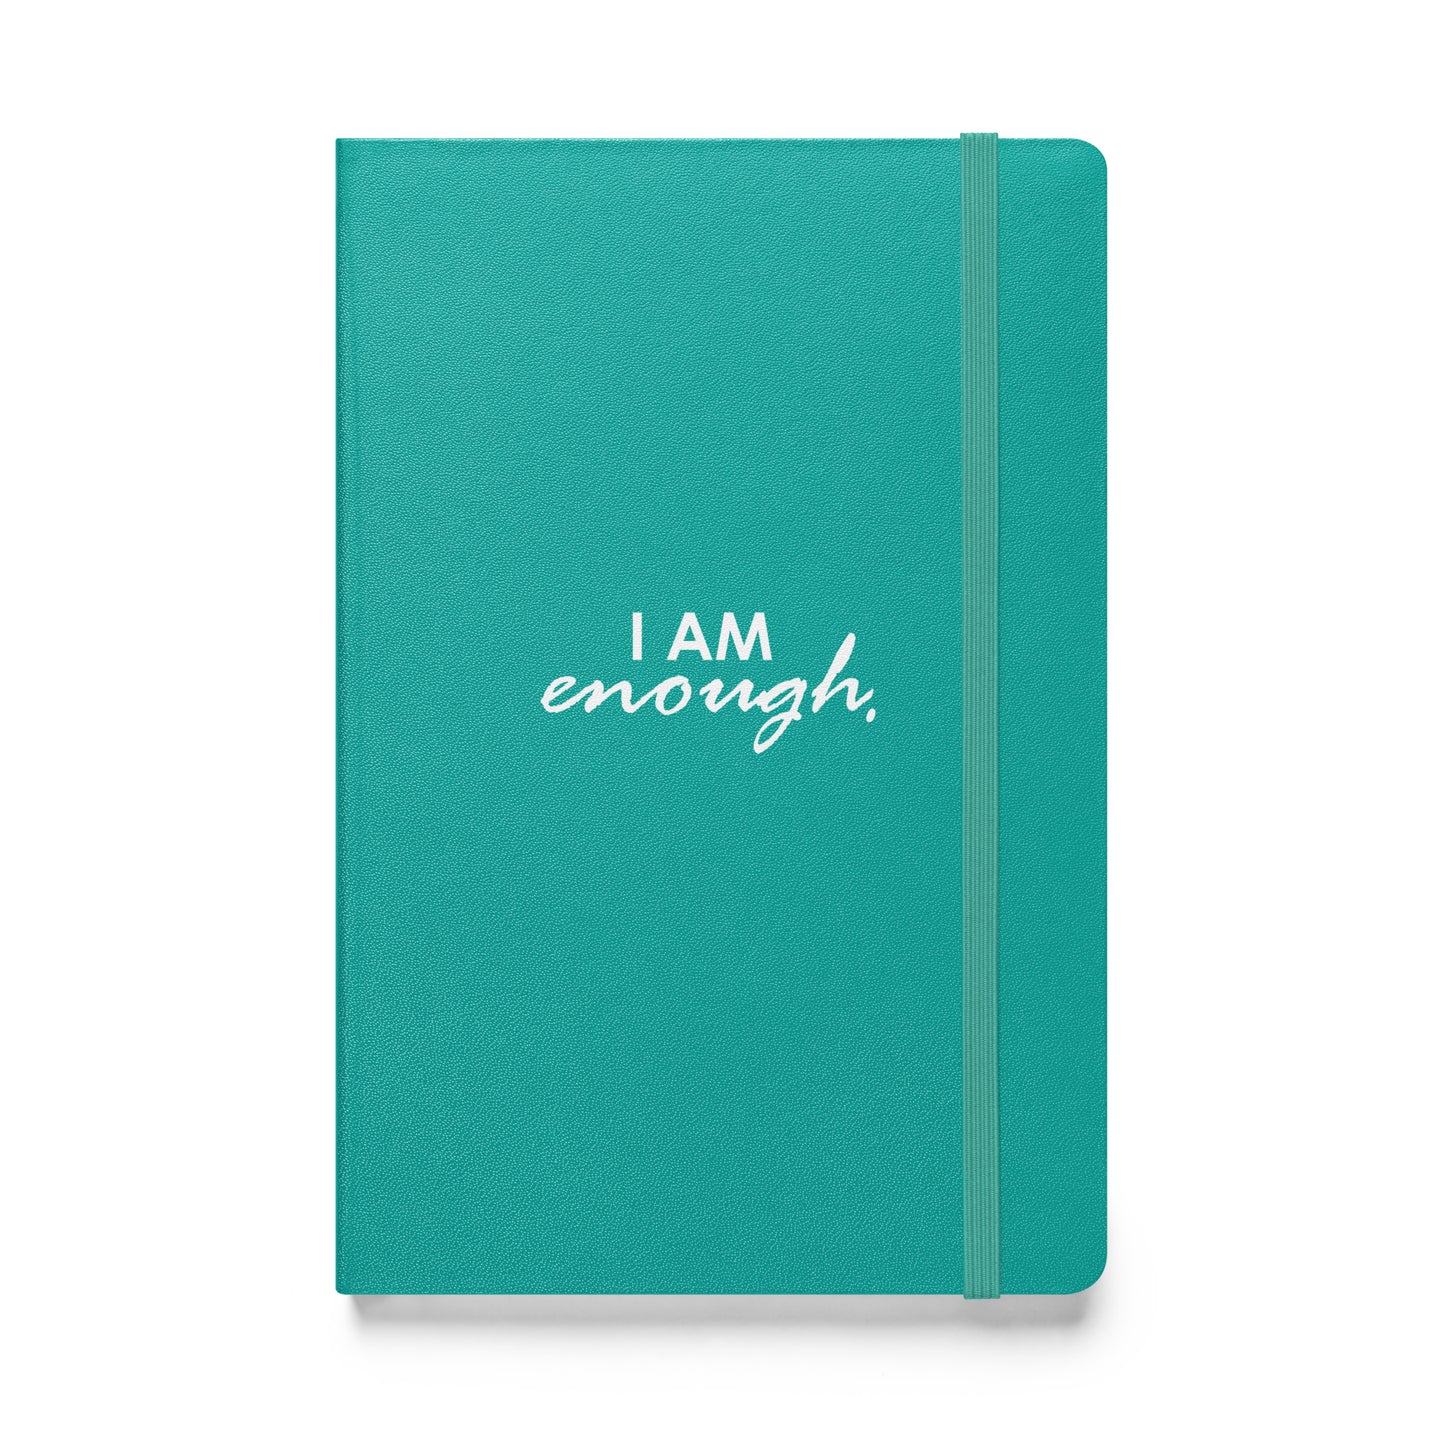 I AM ENOUGH - Hardcover bound notebook & FREE Affirmation Digital Download